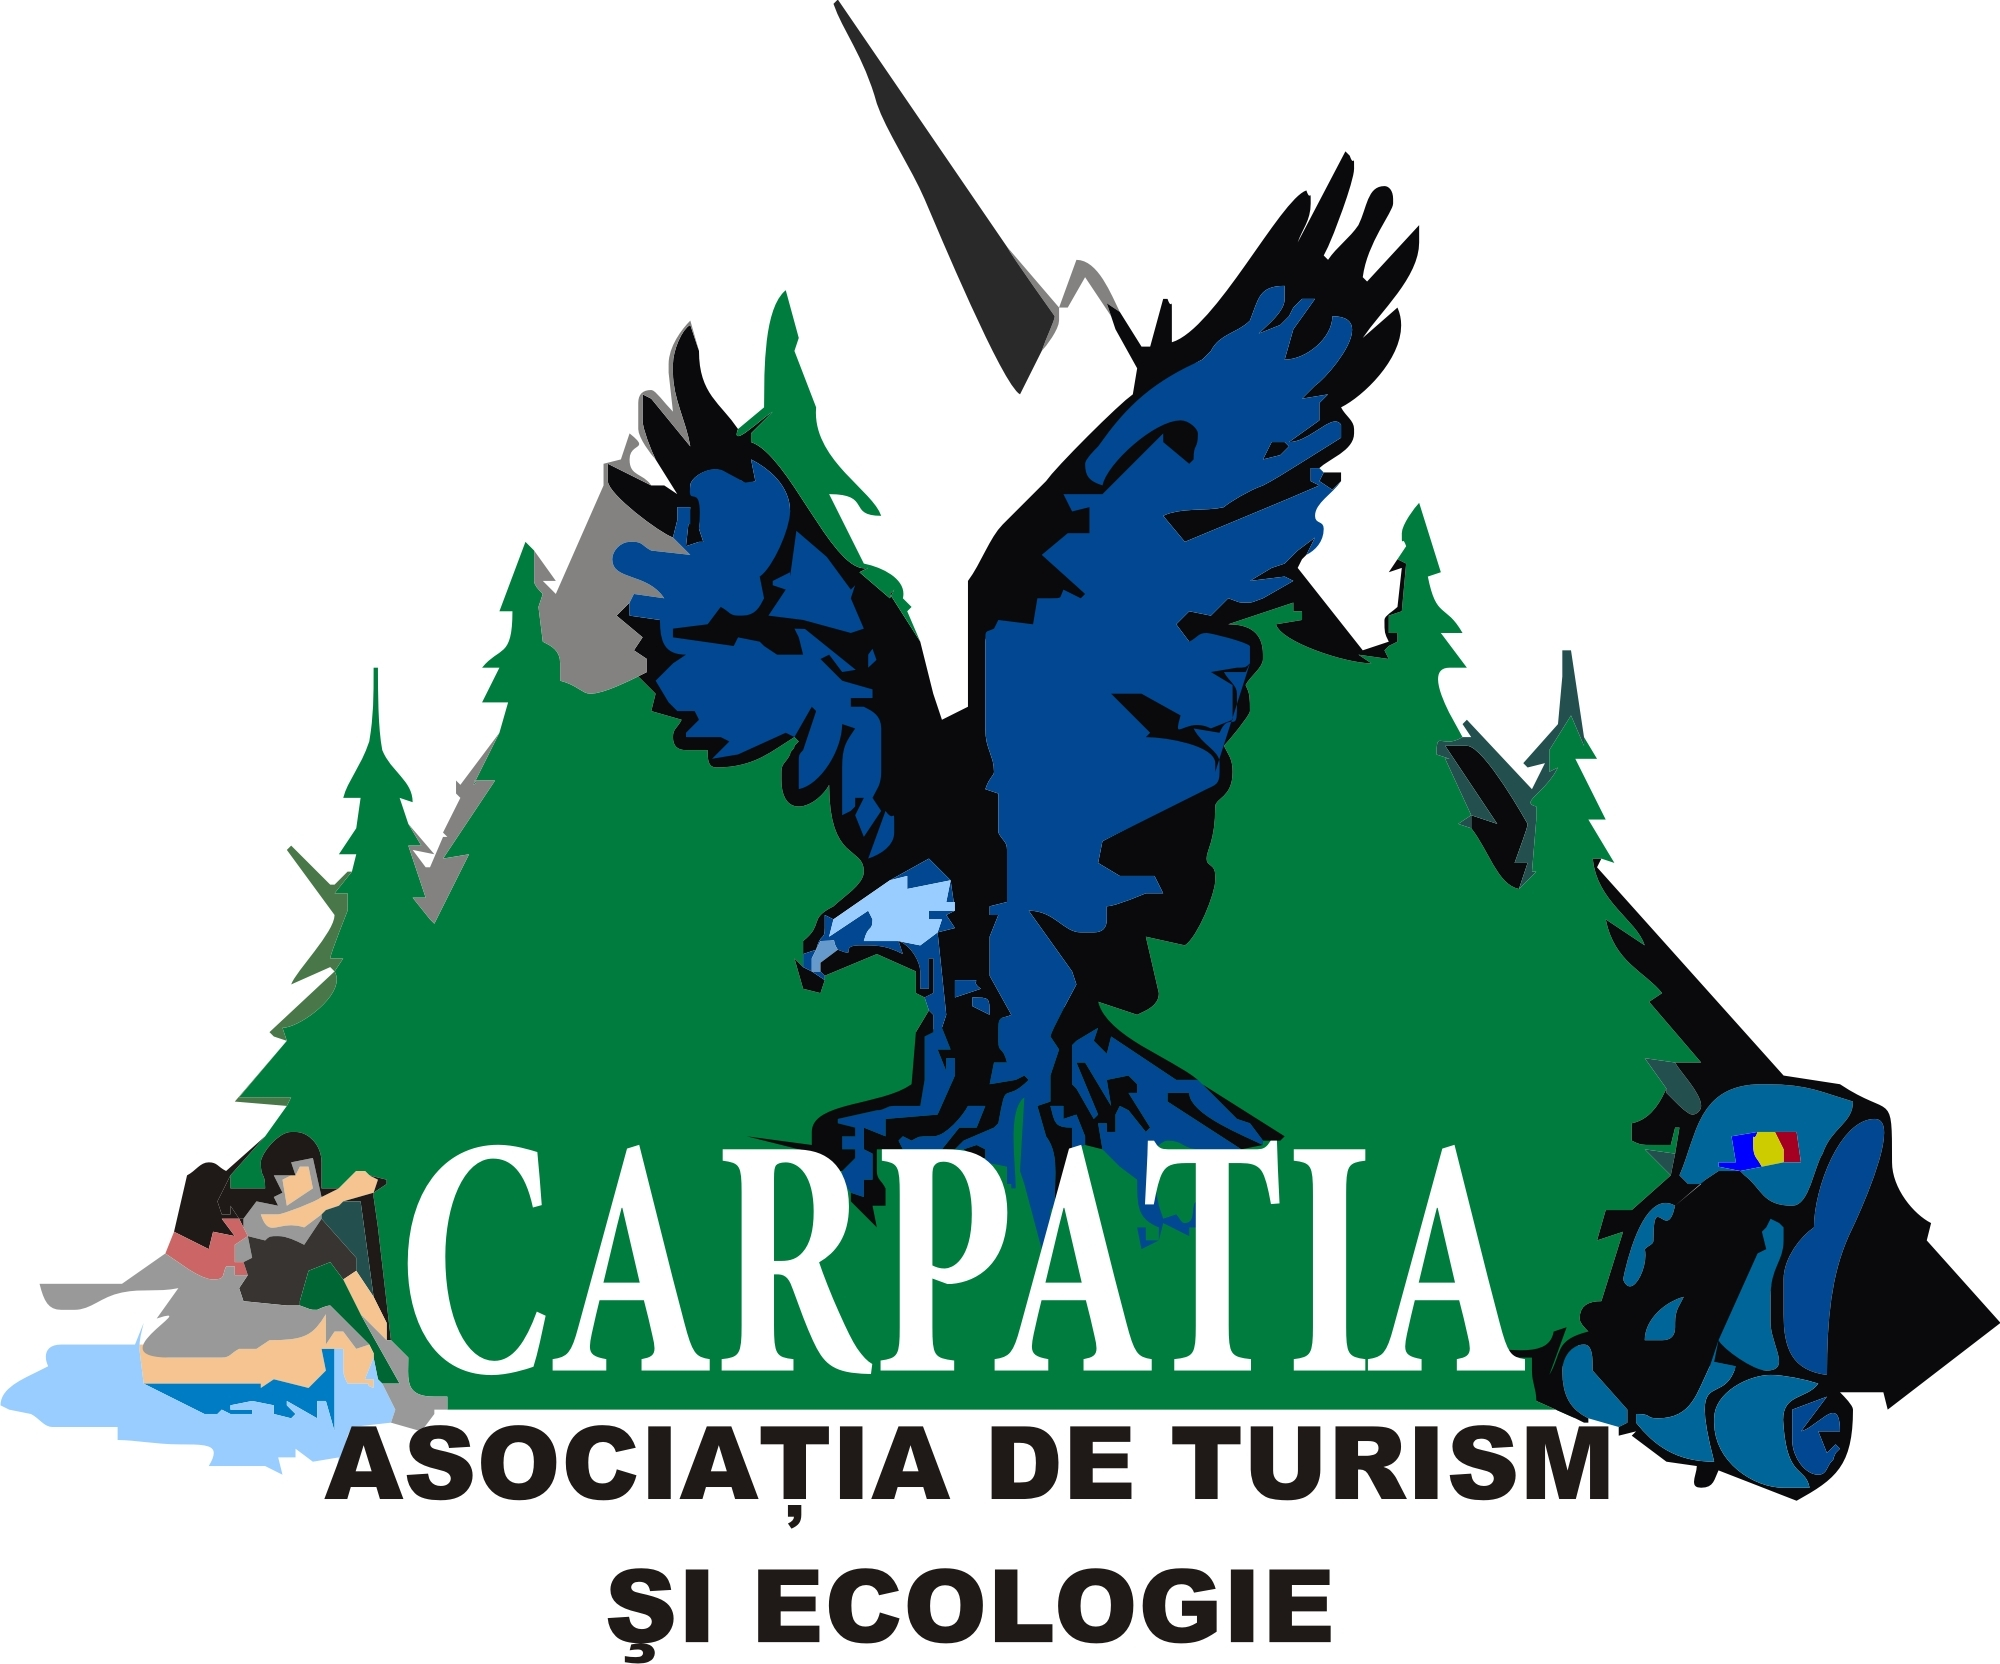 Asociatia de Turism si Ecologie Carpatia logo